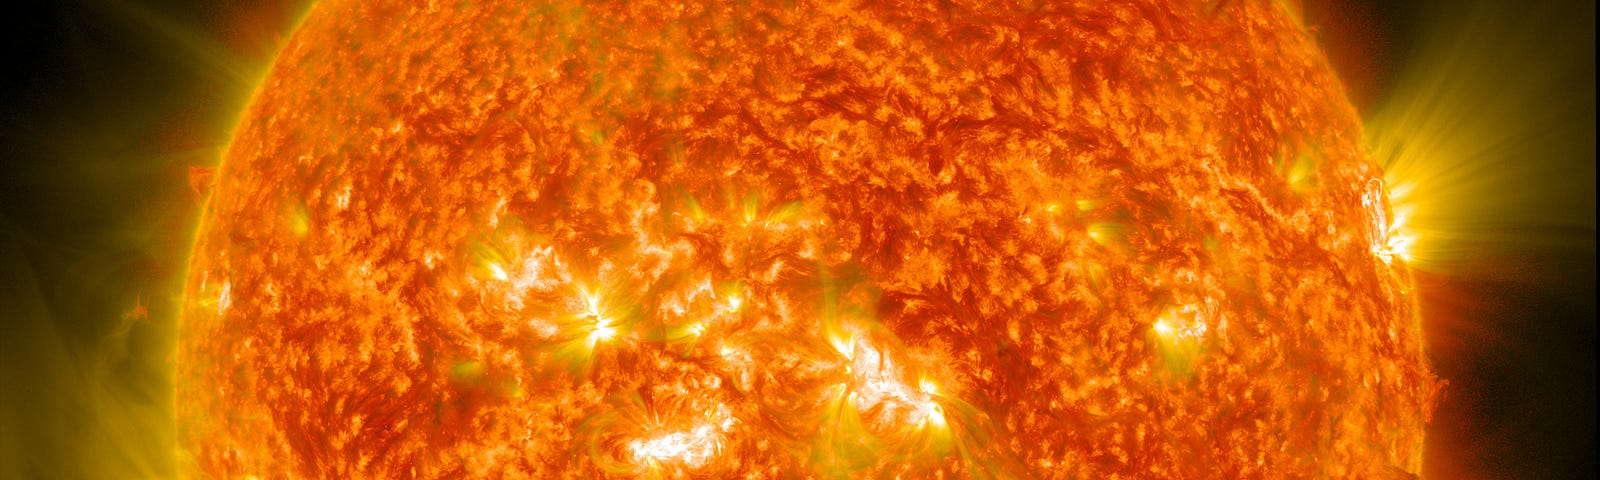 Closeup of the blazing sun.